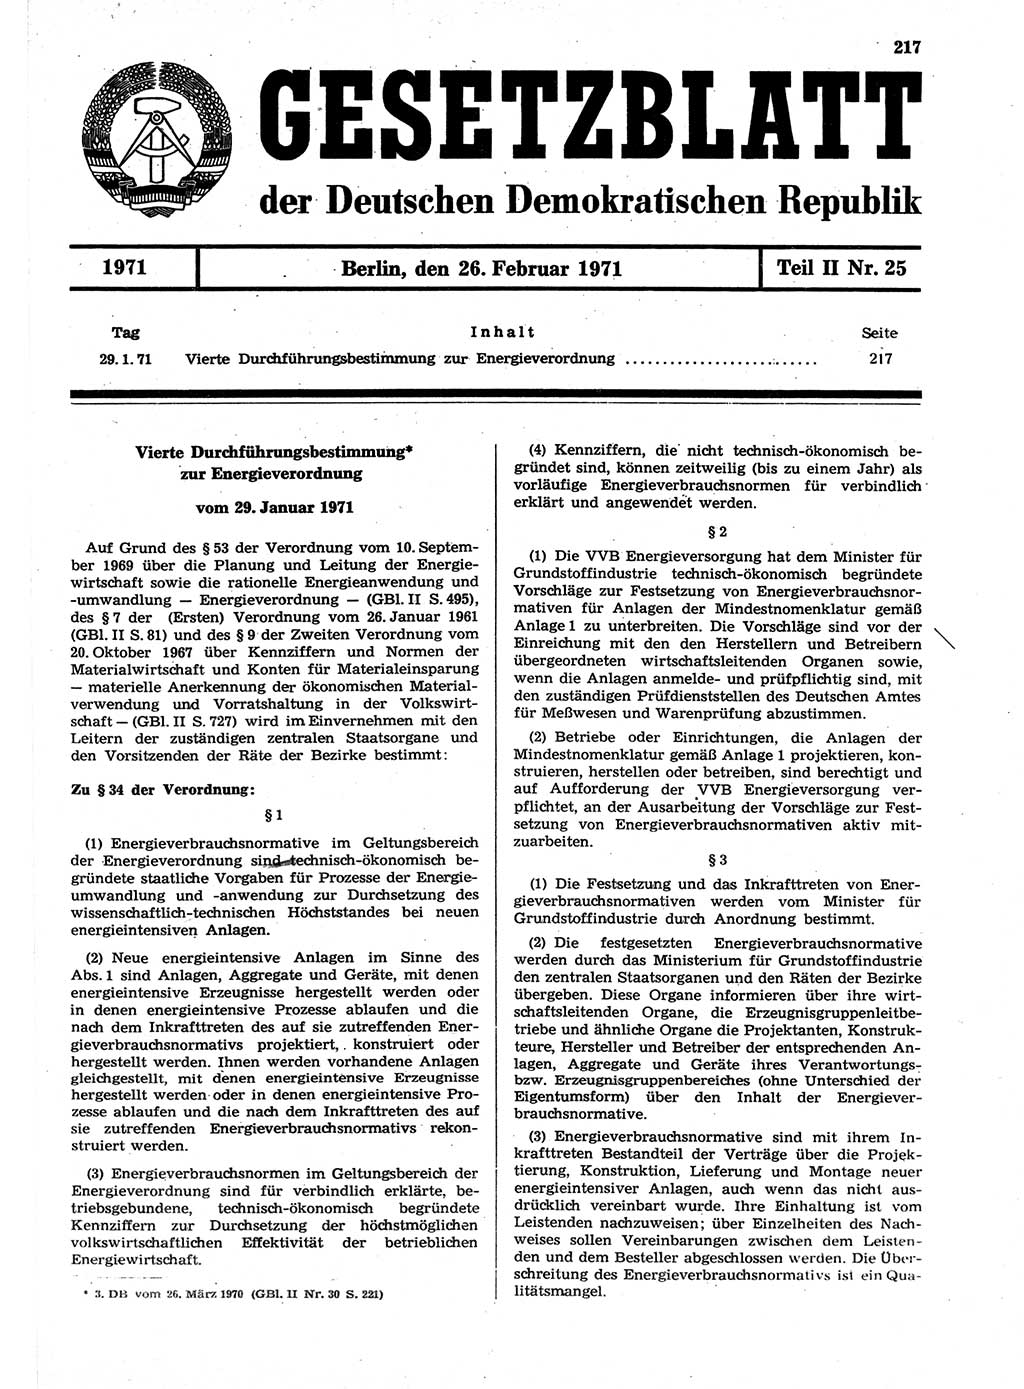 Gesetzblatt (GBl.) der Deutschen Demokratischen Republik (DDR) Teil ⅠⅠ 1971, Seite 217 (GBl. DDR ⅠⅠ 1971, S. 217)